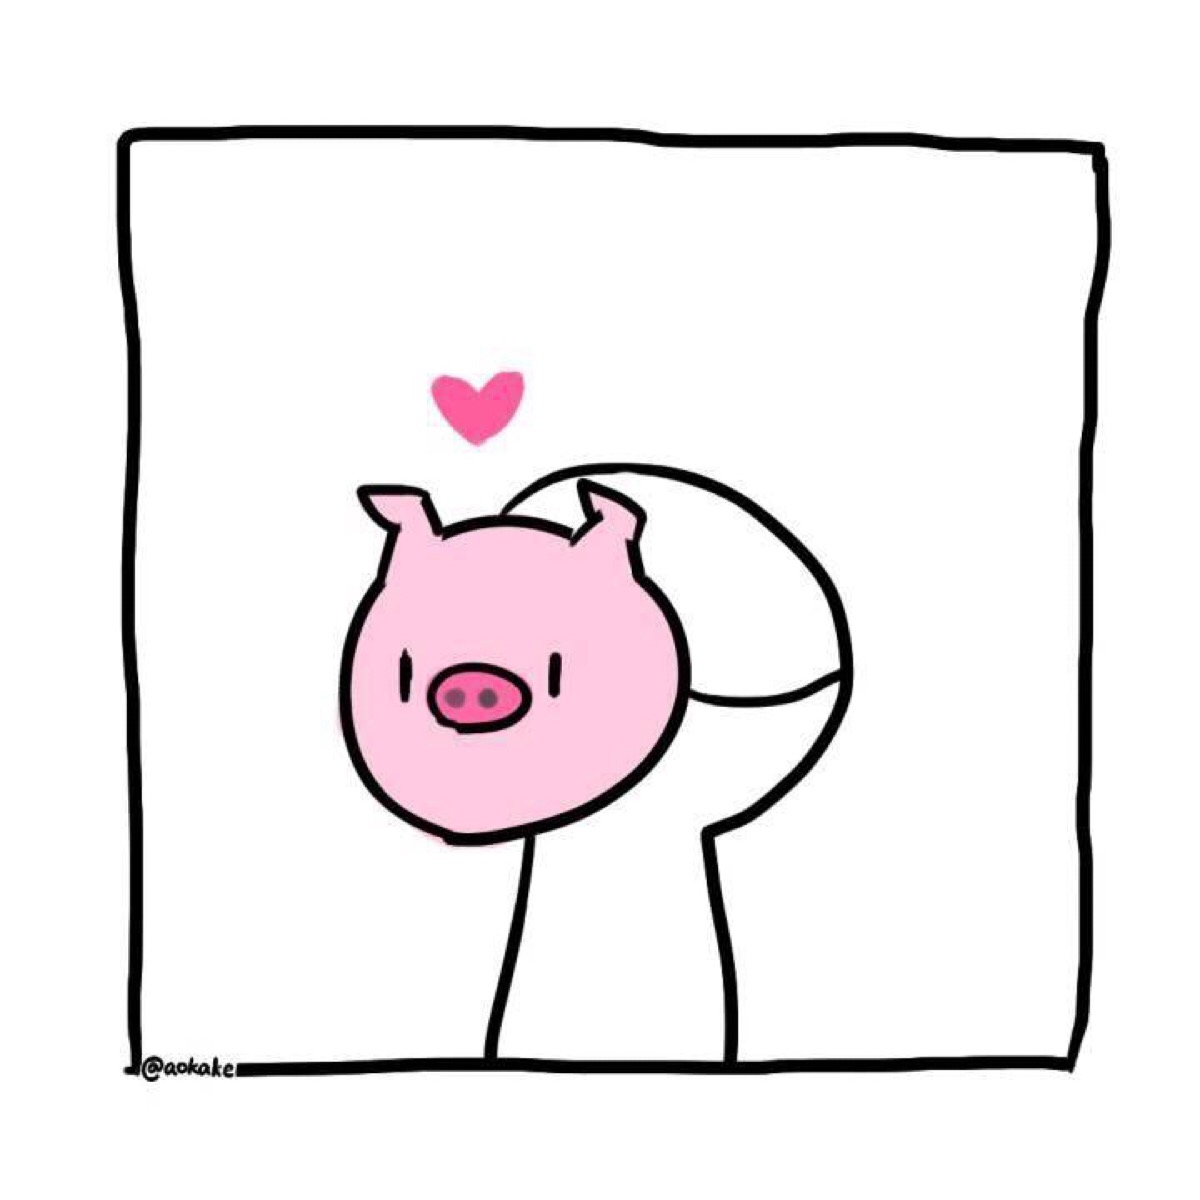 情侣头像白菜和猪可爱图片